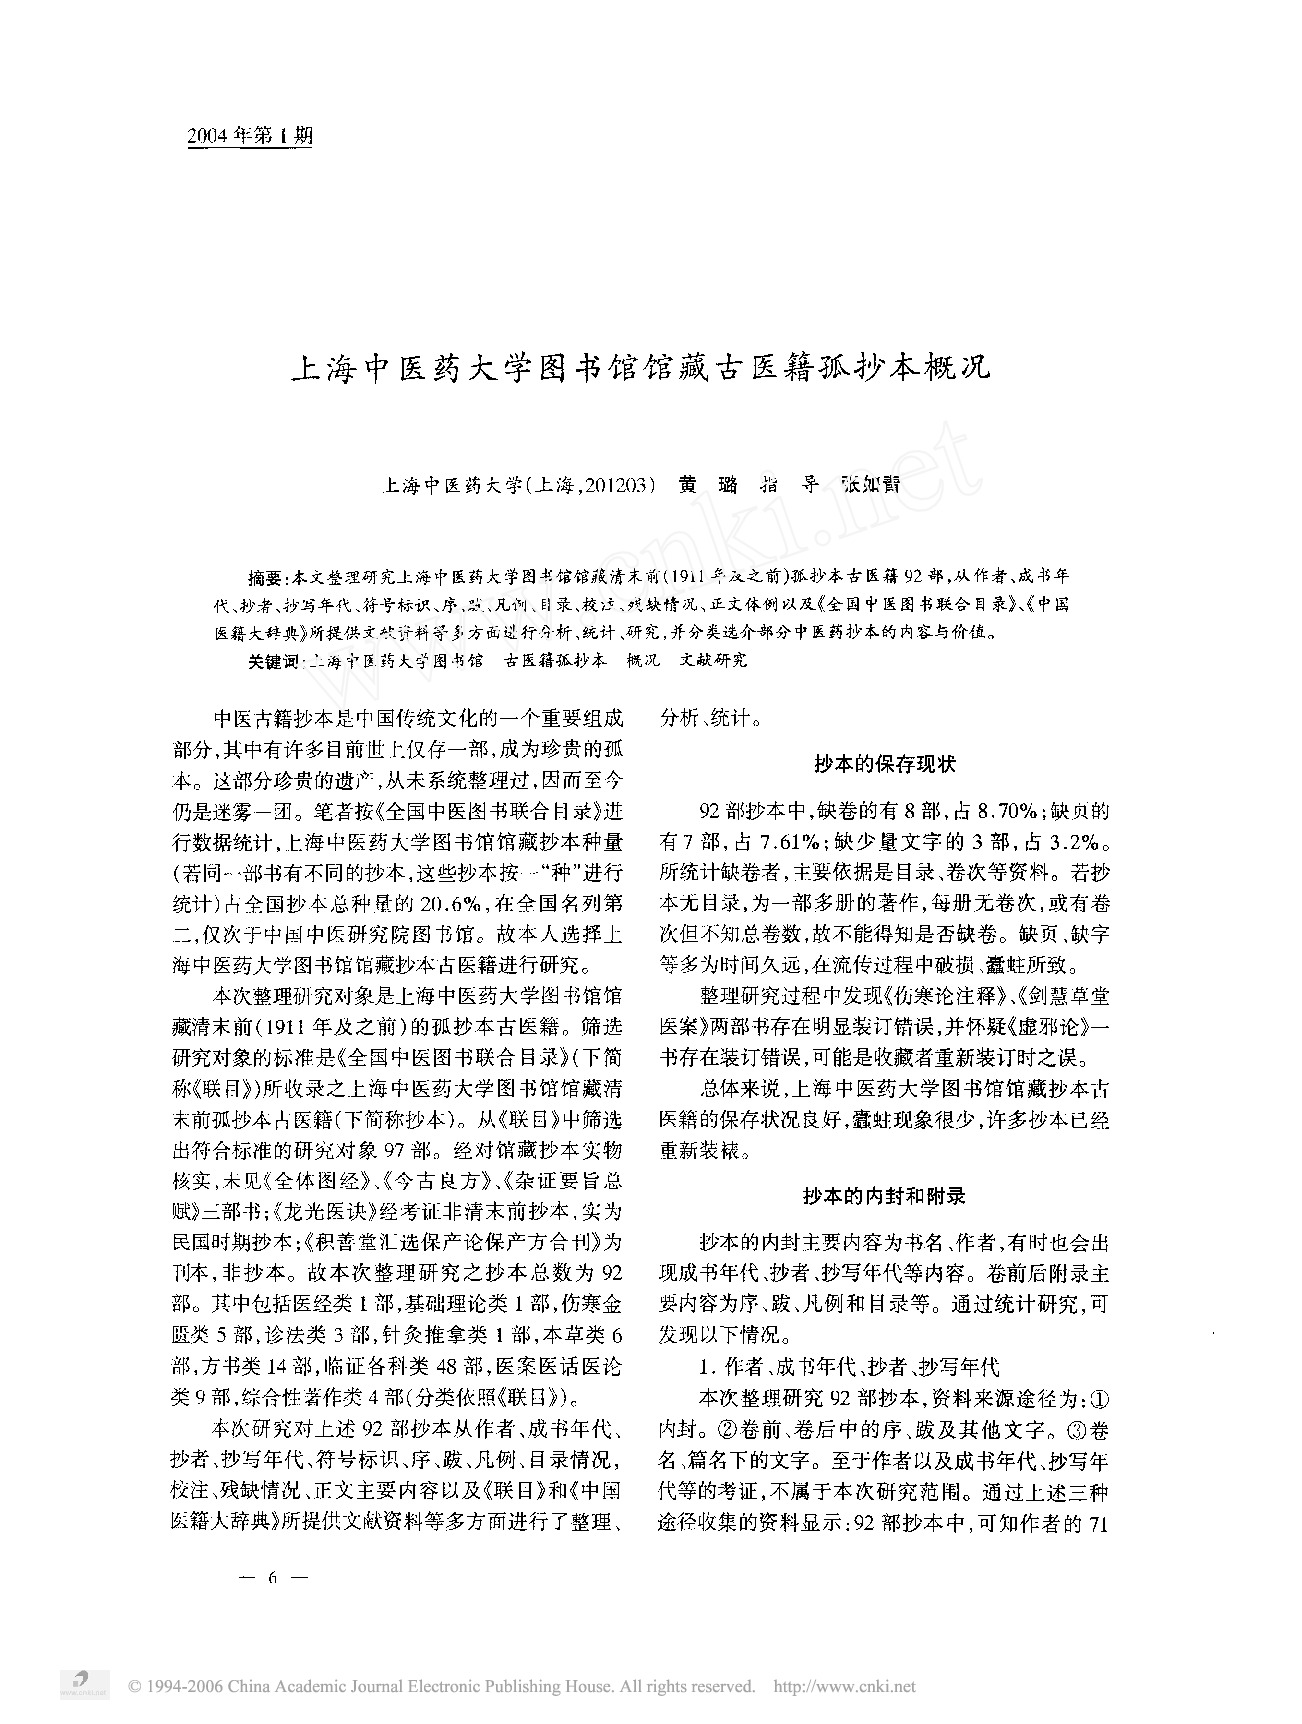 上海中医药大学图书馆馆藏古医籍孤抄本概况